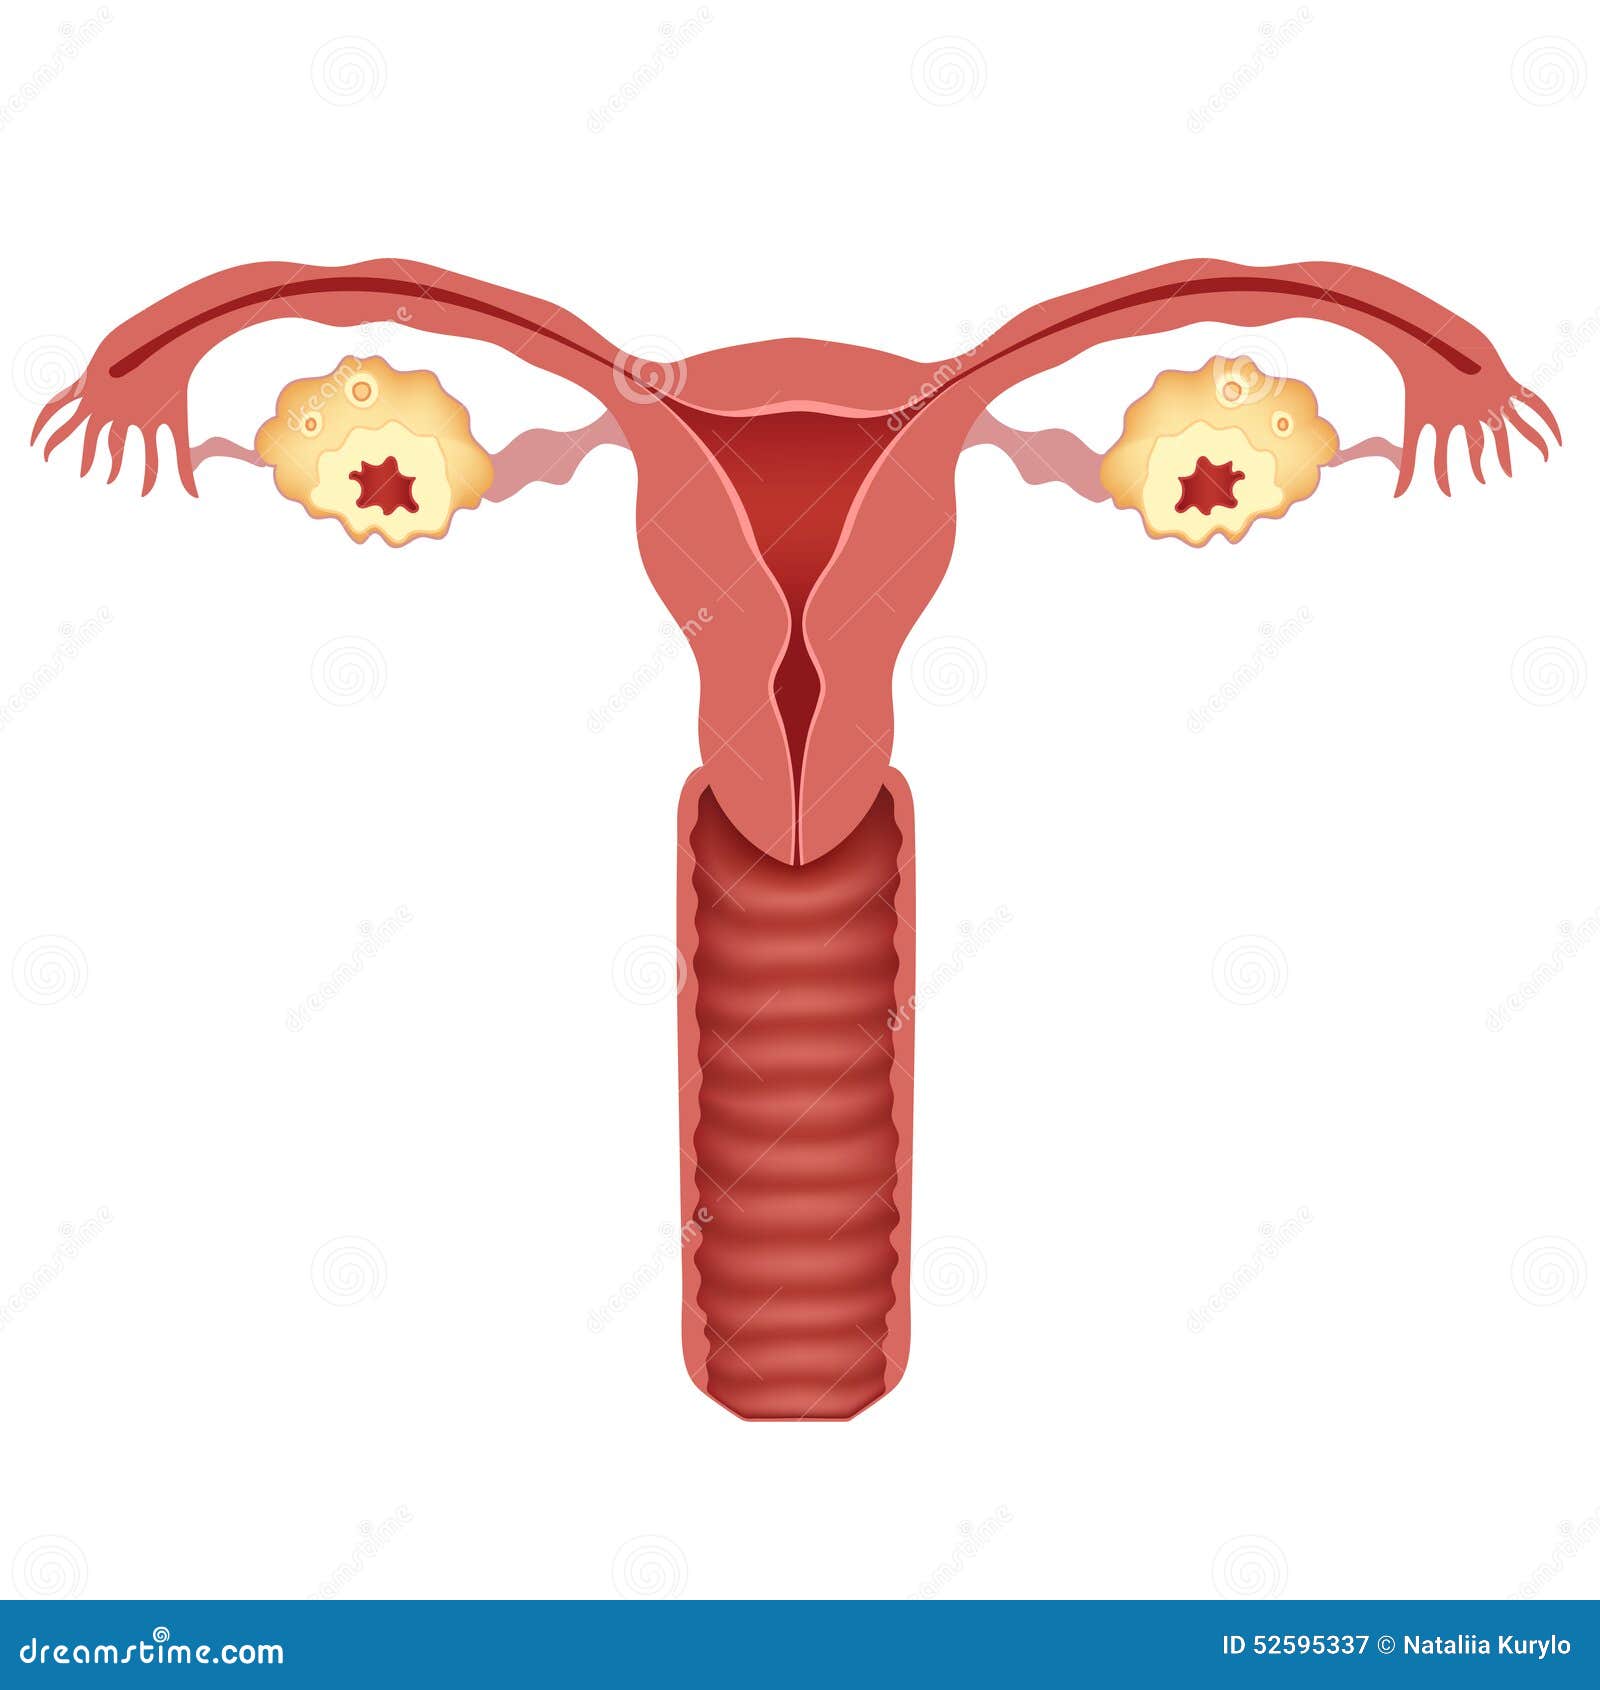 子宫卵巢图片位置图-图库-五毛网